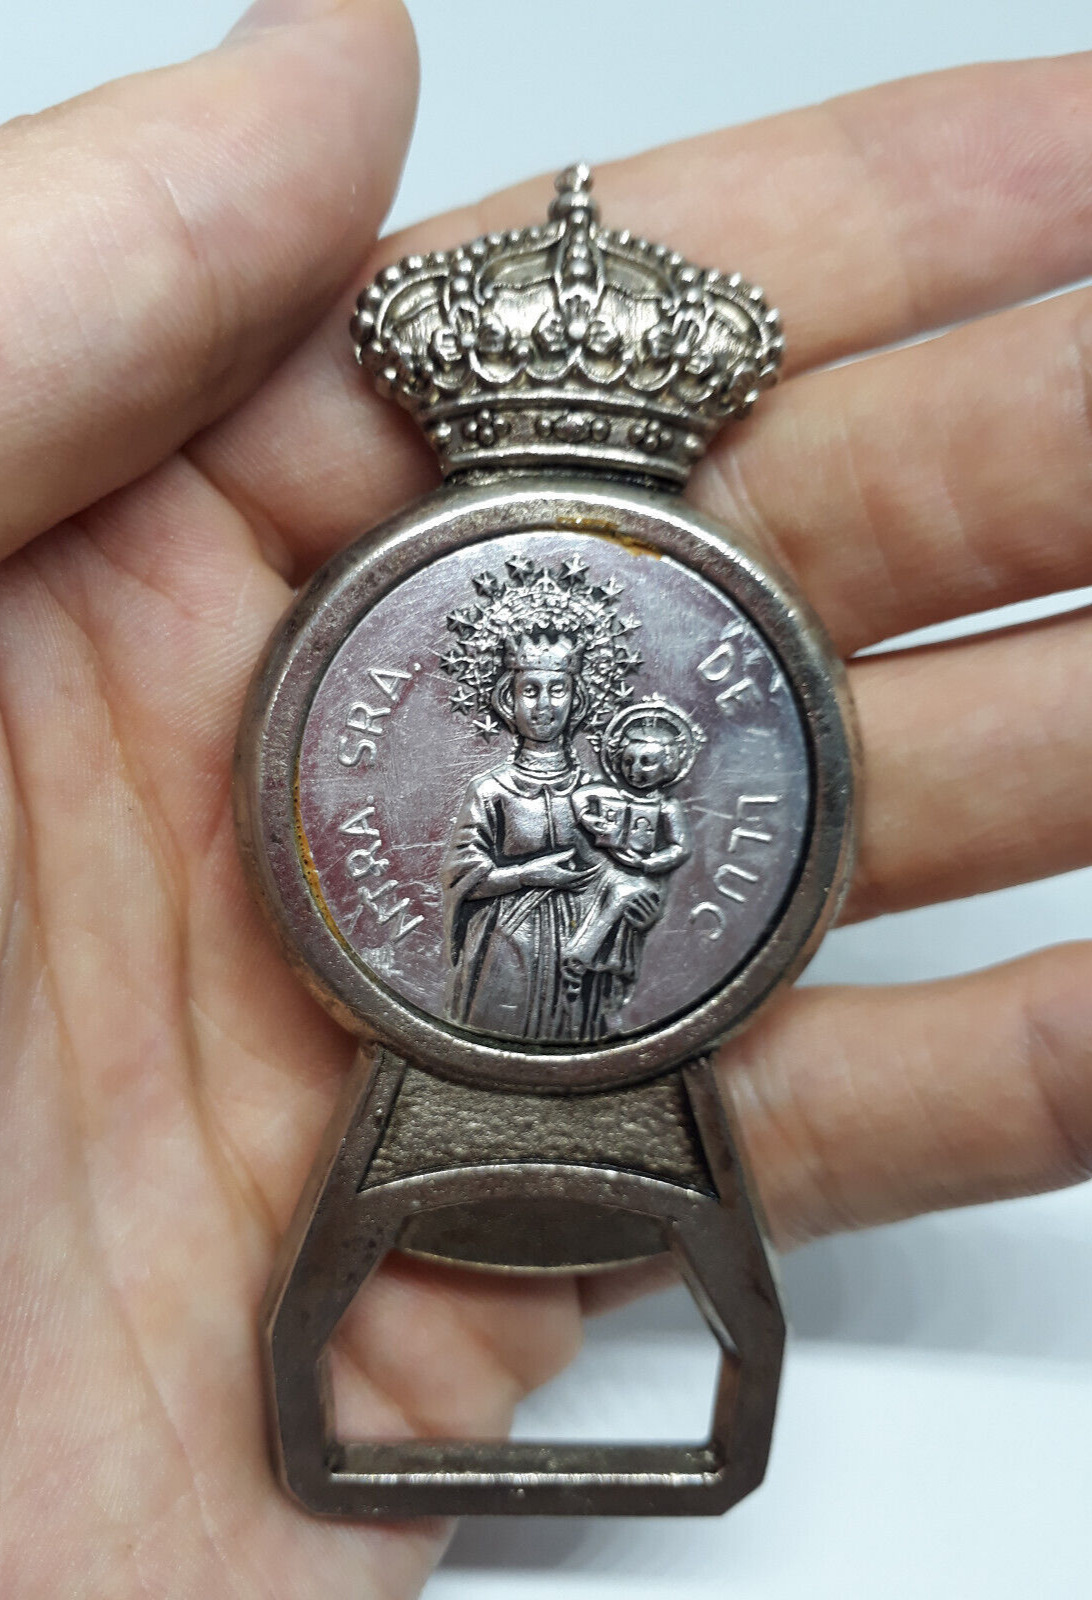 Antique Rare Opener Medal Religious Ntra Sra De Lucc Old Spanish Collectible